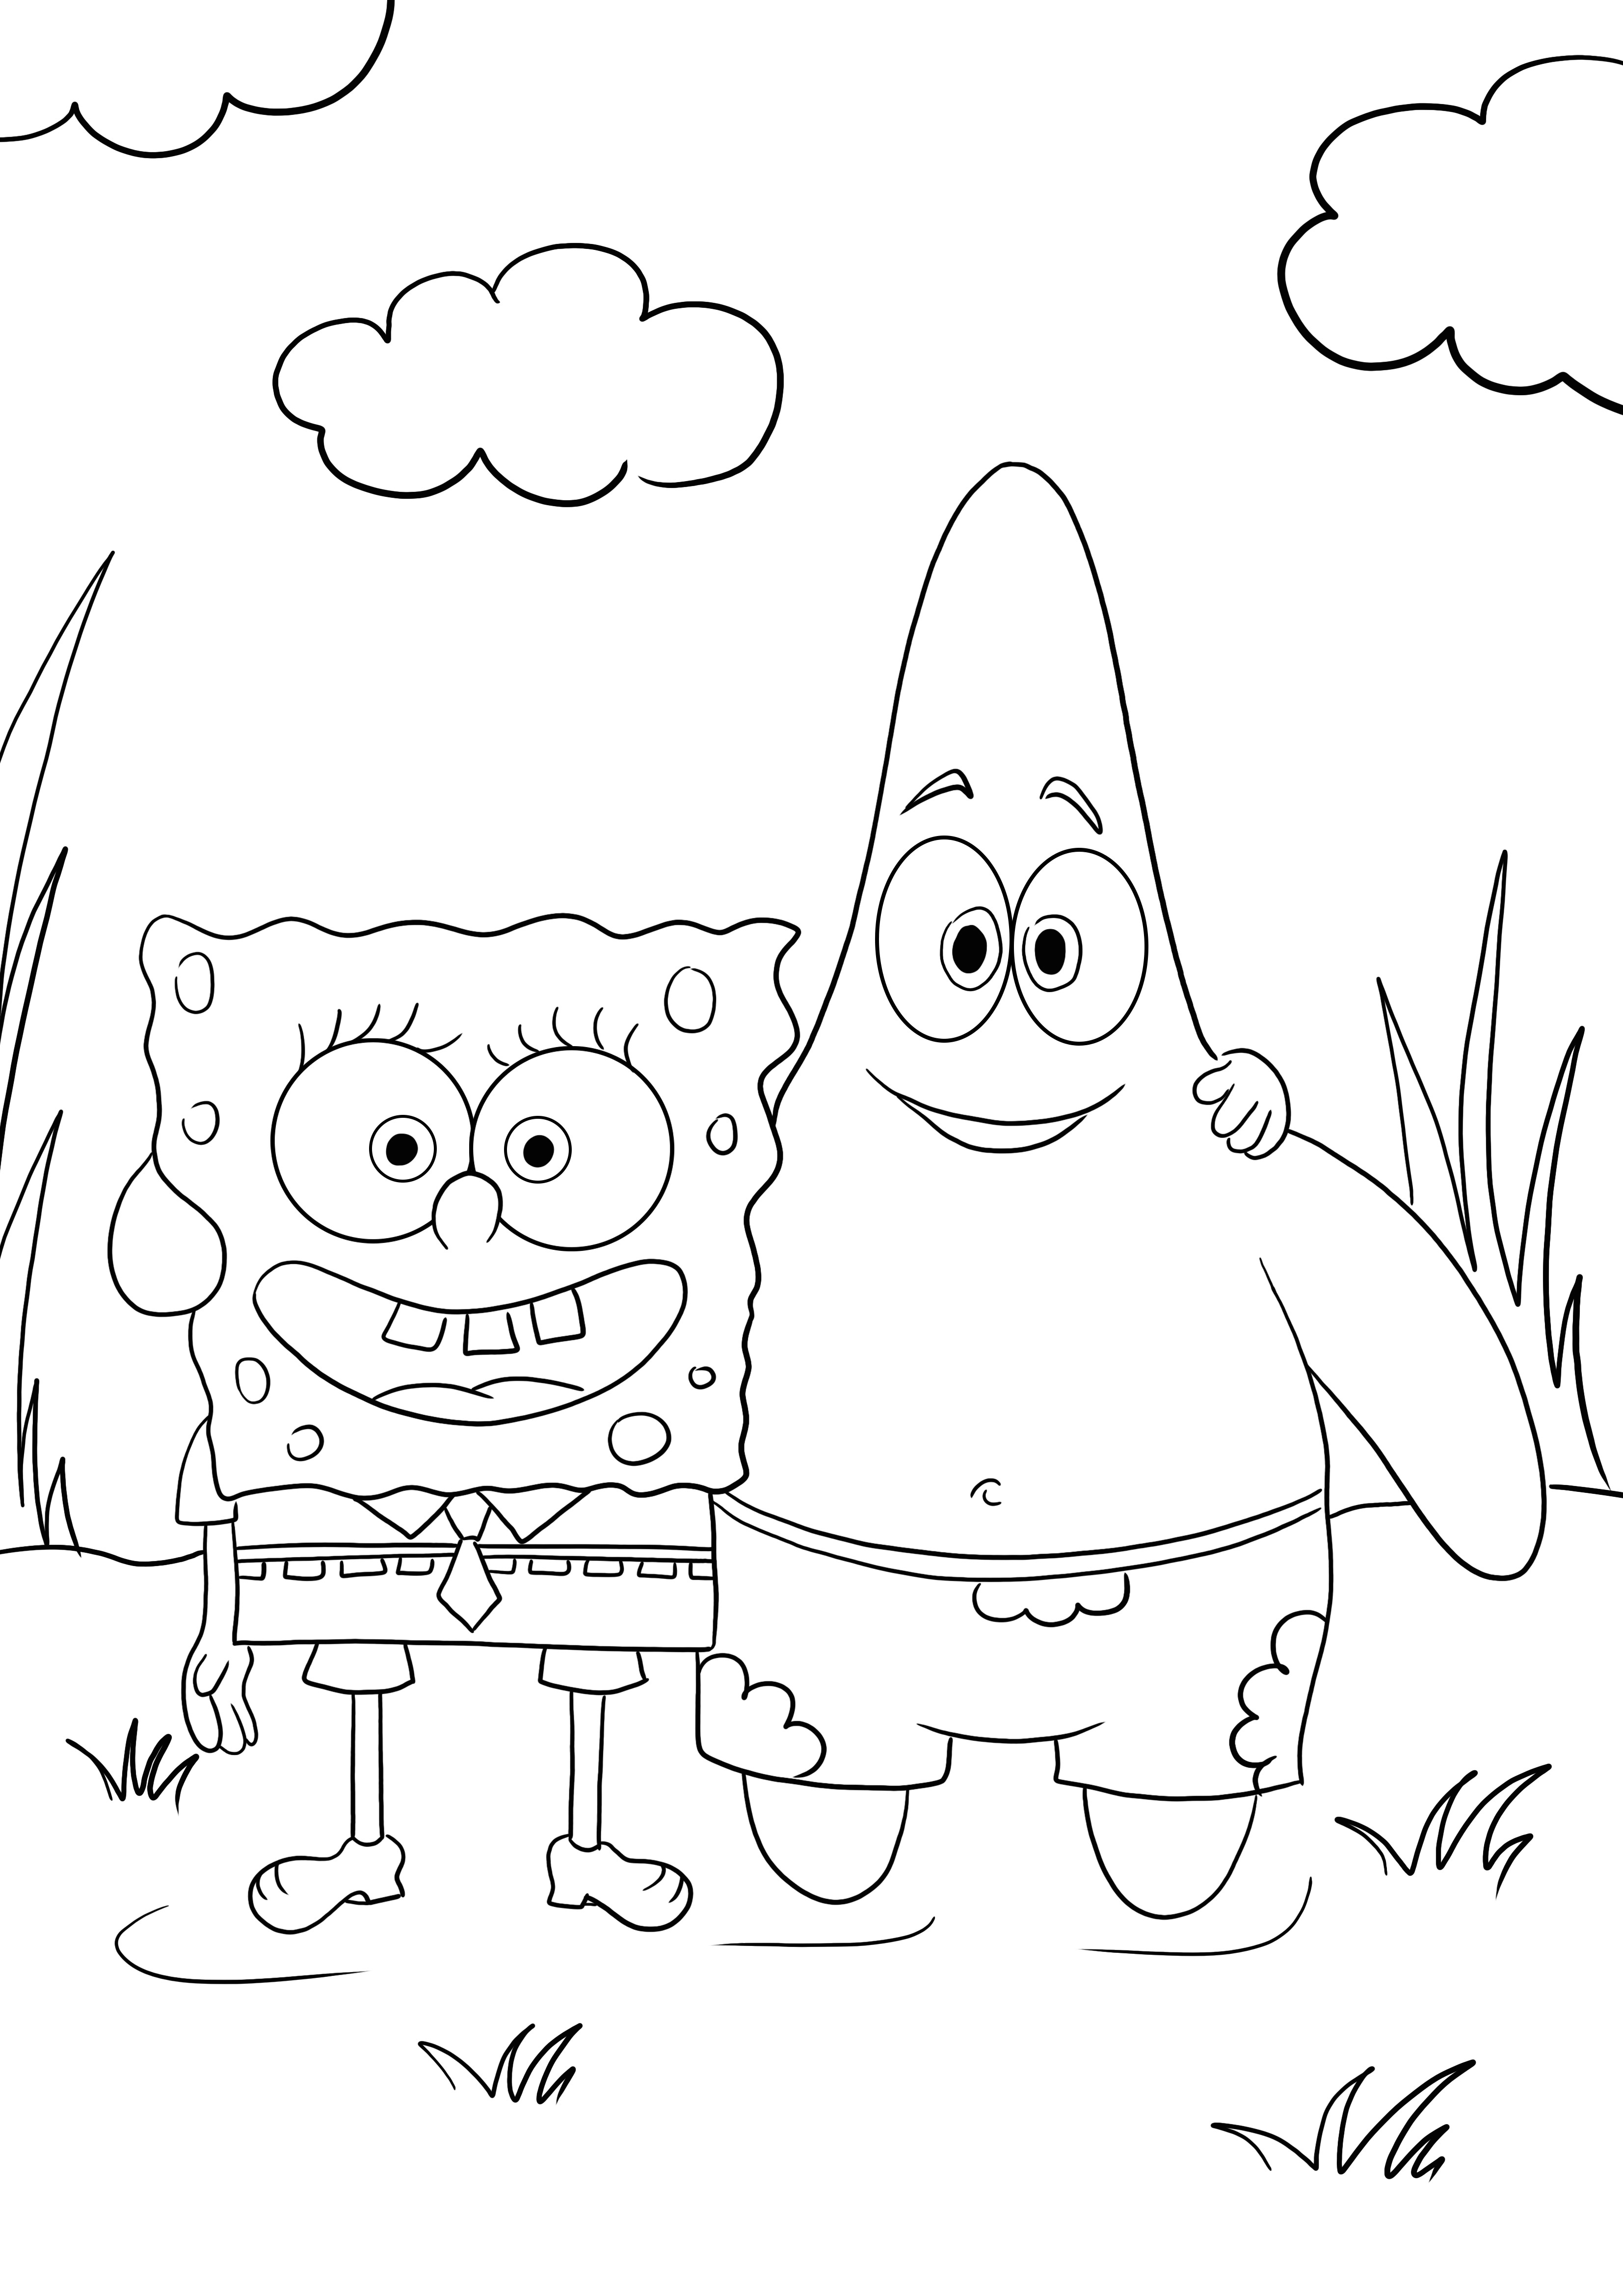 Bob Esponja y su mejor amigo Patricio para colorear y descargar imagen gratis